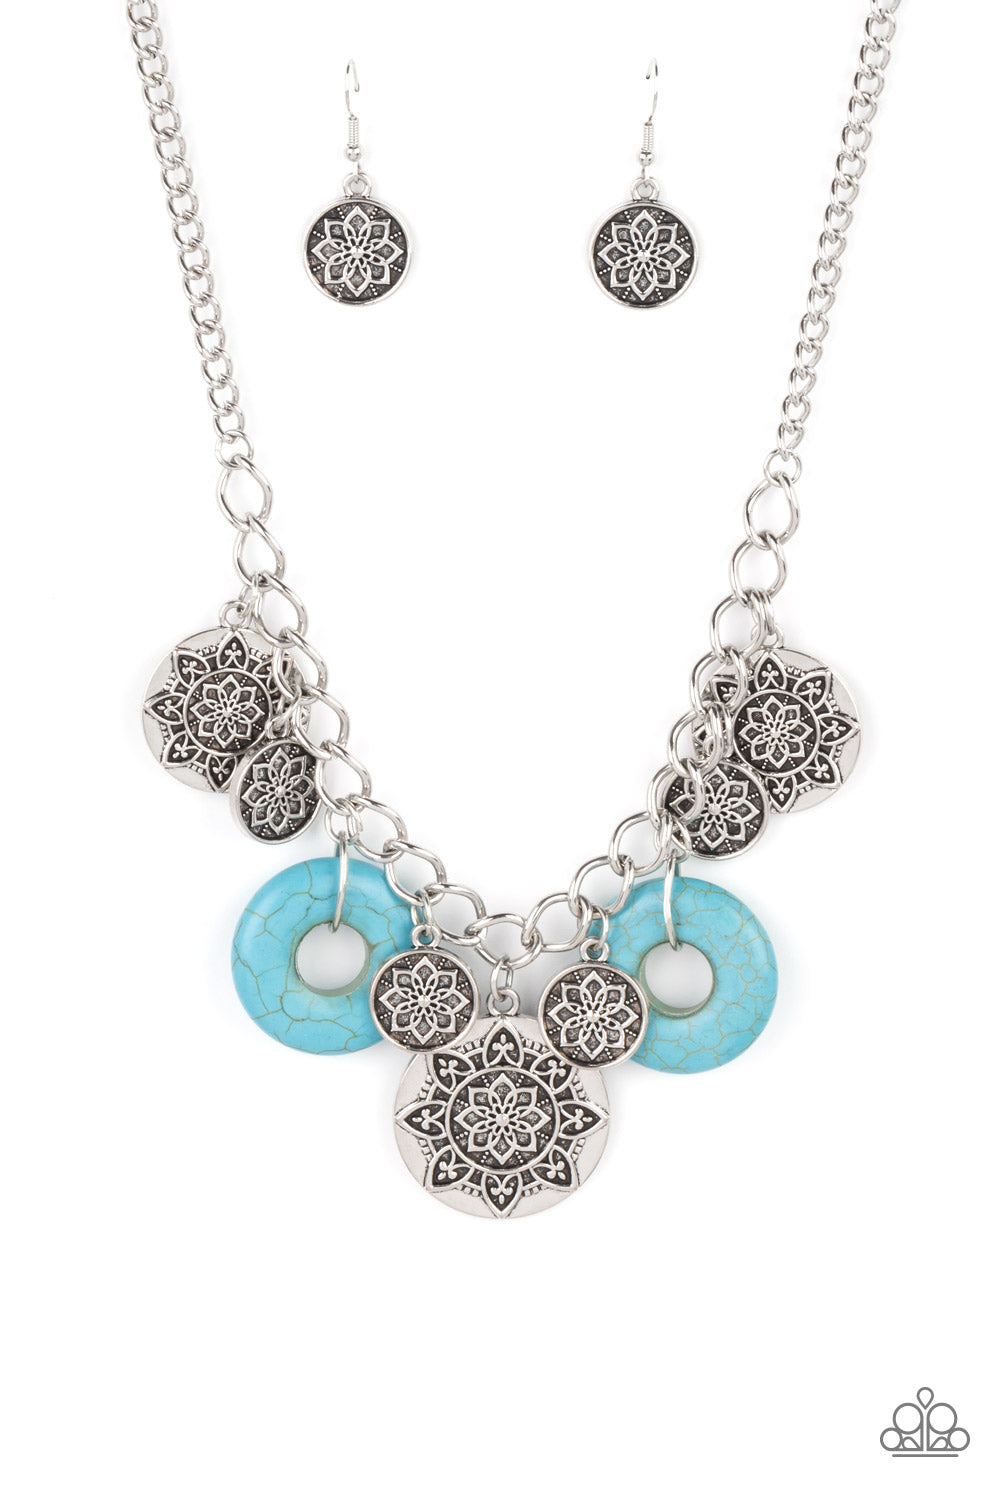 Paparazzi “Vintage Vault” “Western Zen” Blue Necklace Earring Set